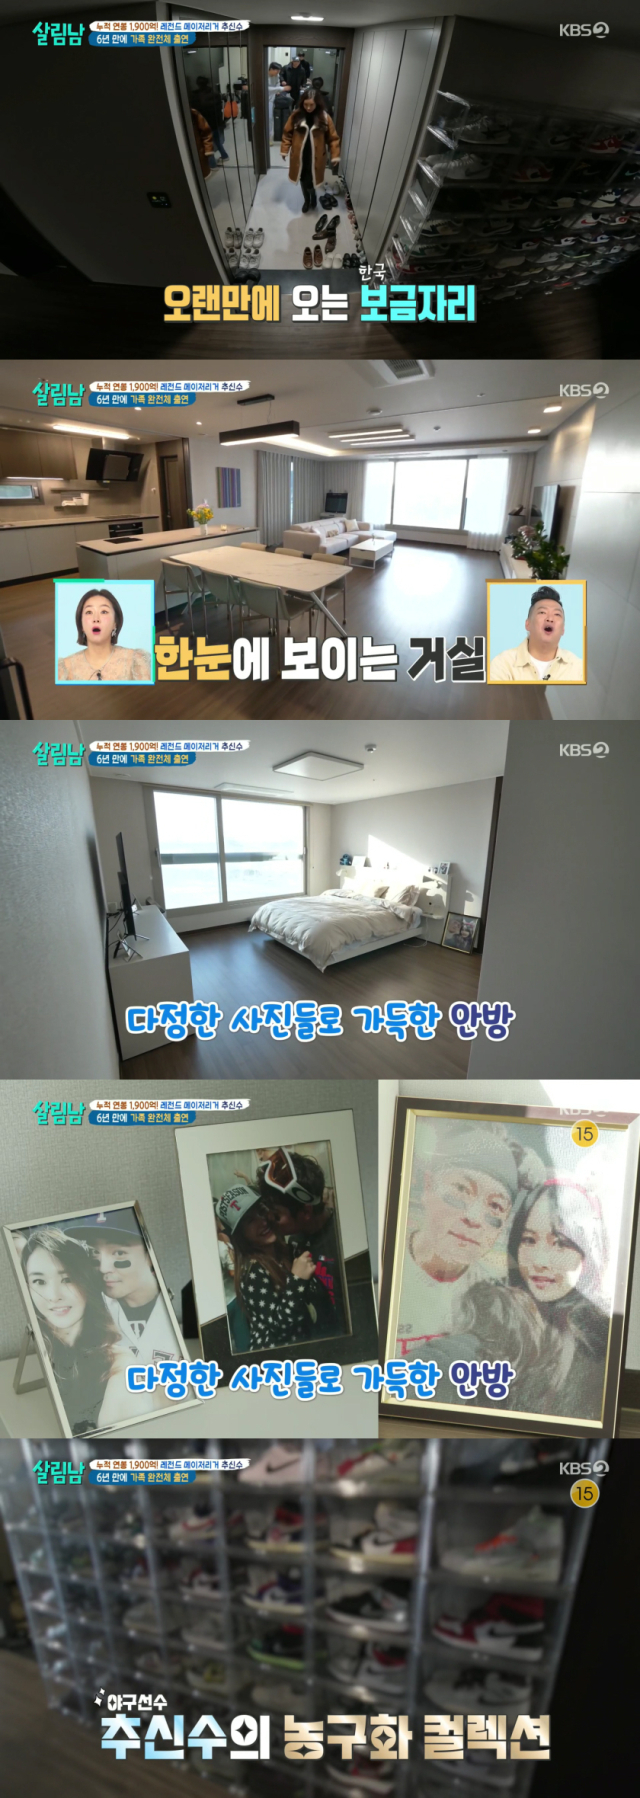 야구선수 추신수의 한국 집./KBS 2TV 예능 프로그램 '살림하는 남자들 시즌2' 방송 캡처